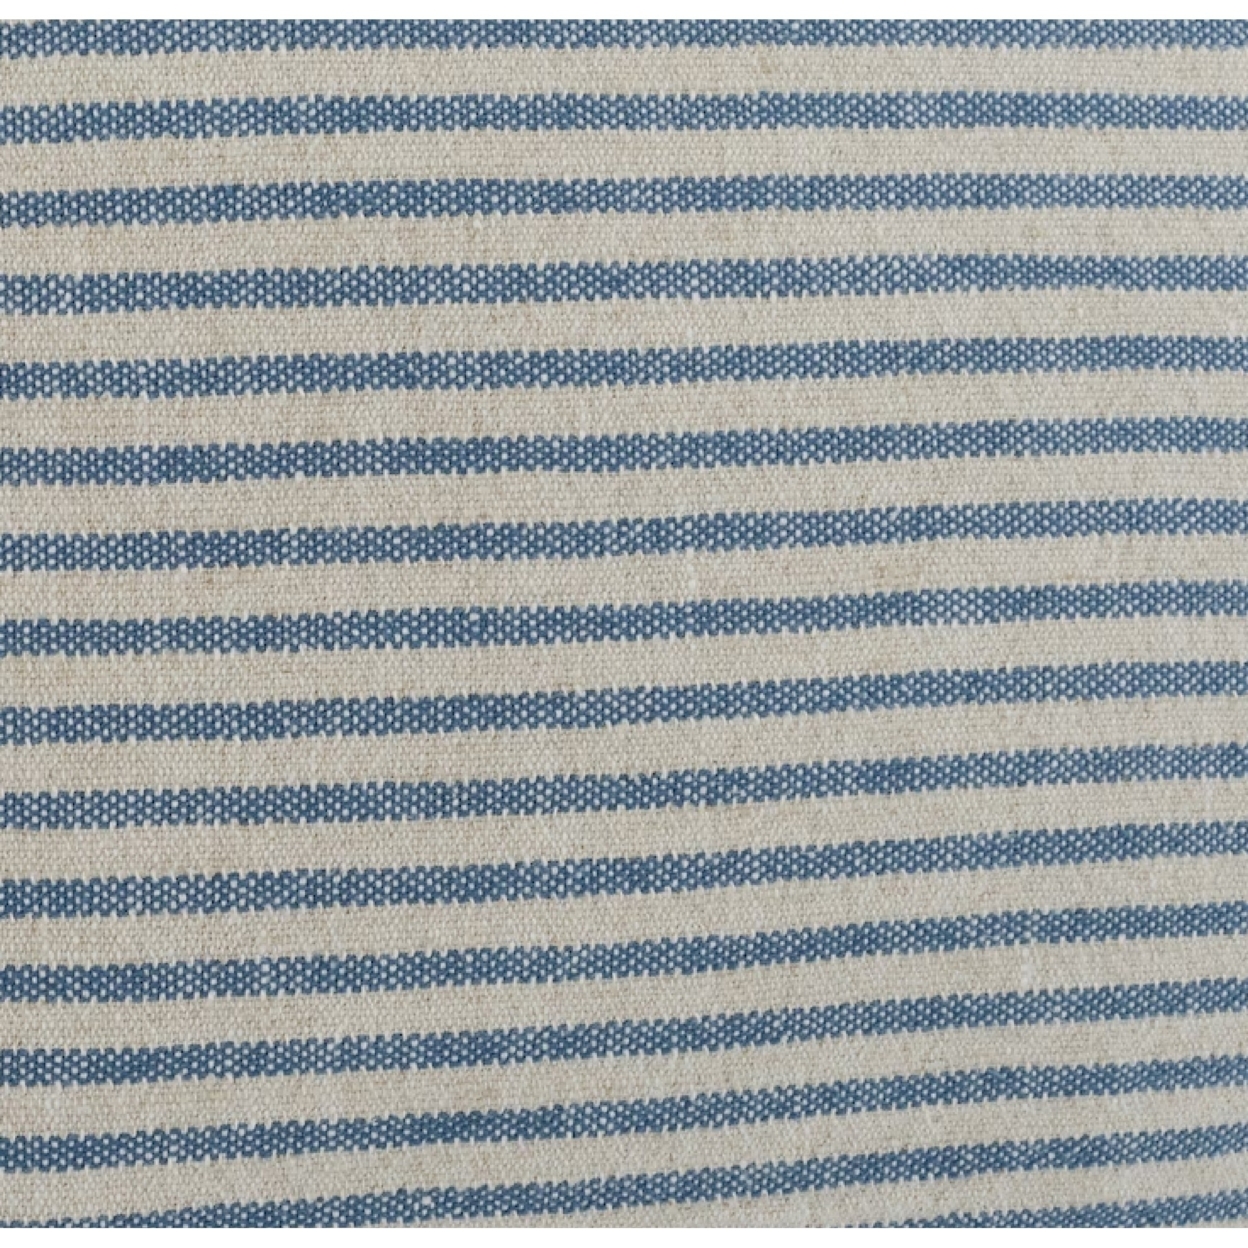 20 X 20 Modern Throw Pillow, Cotton Linen, Woven Stripes, Tassels, Blue, Saltoro Sherpi